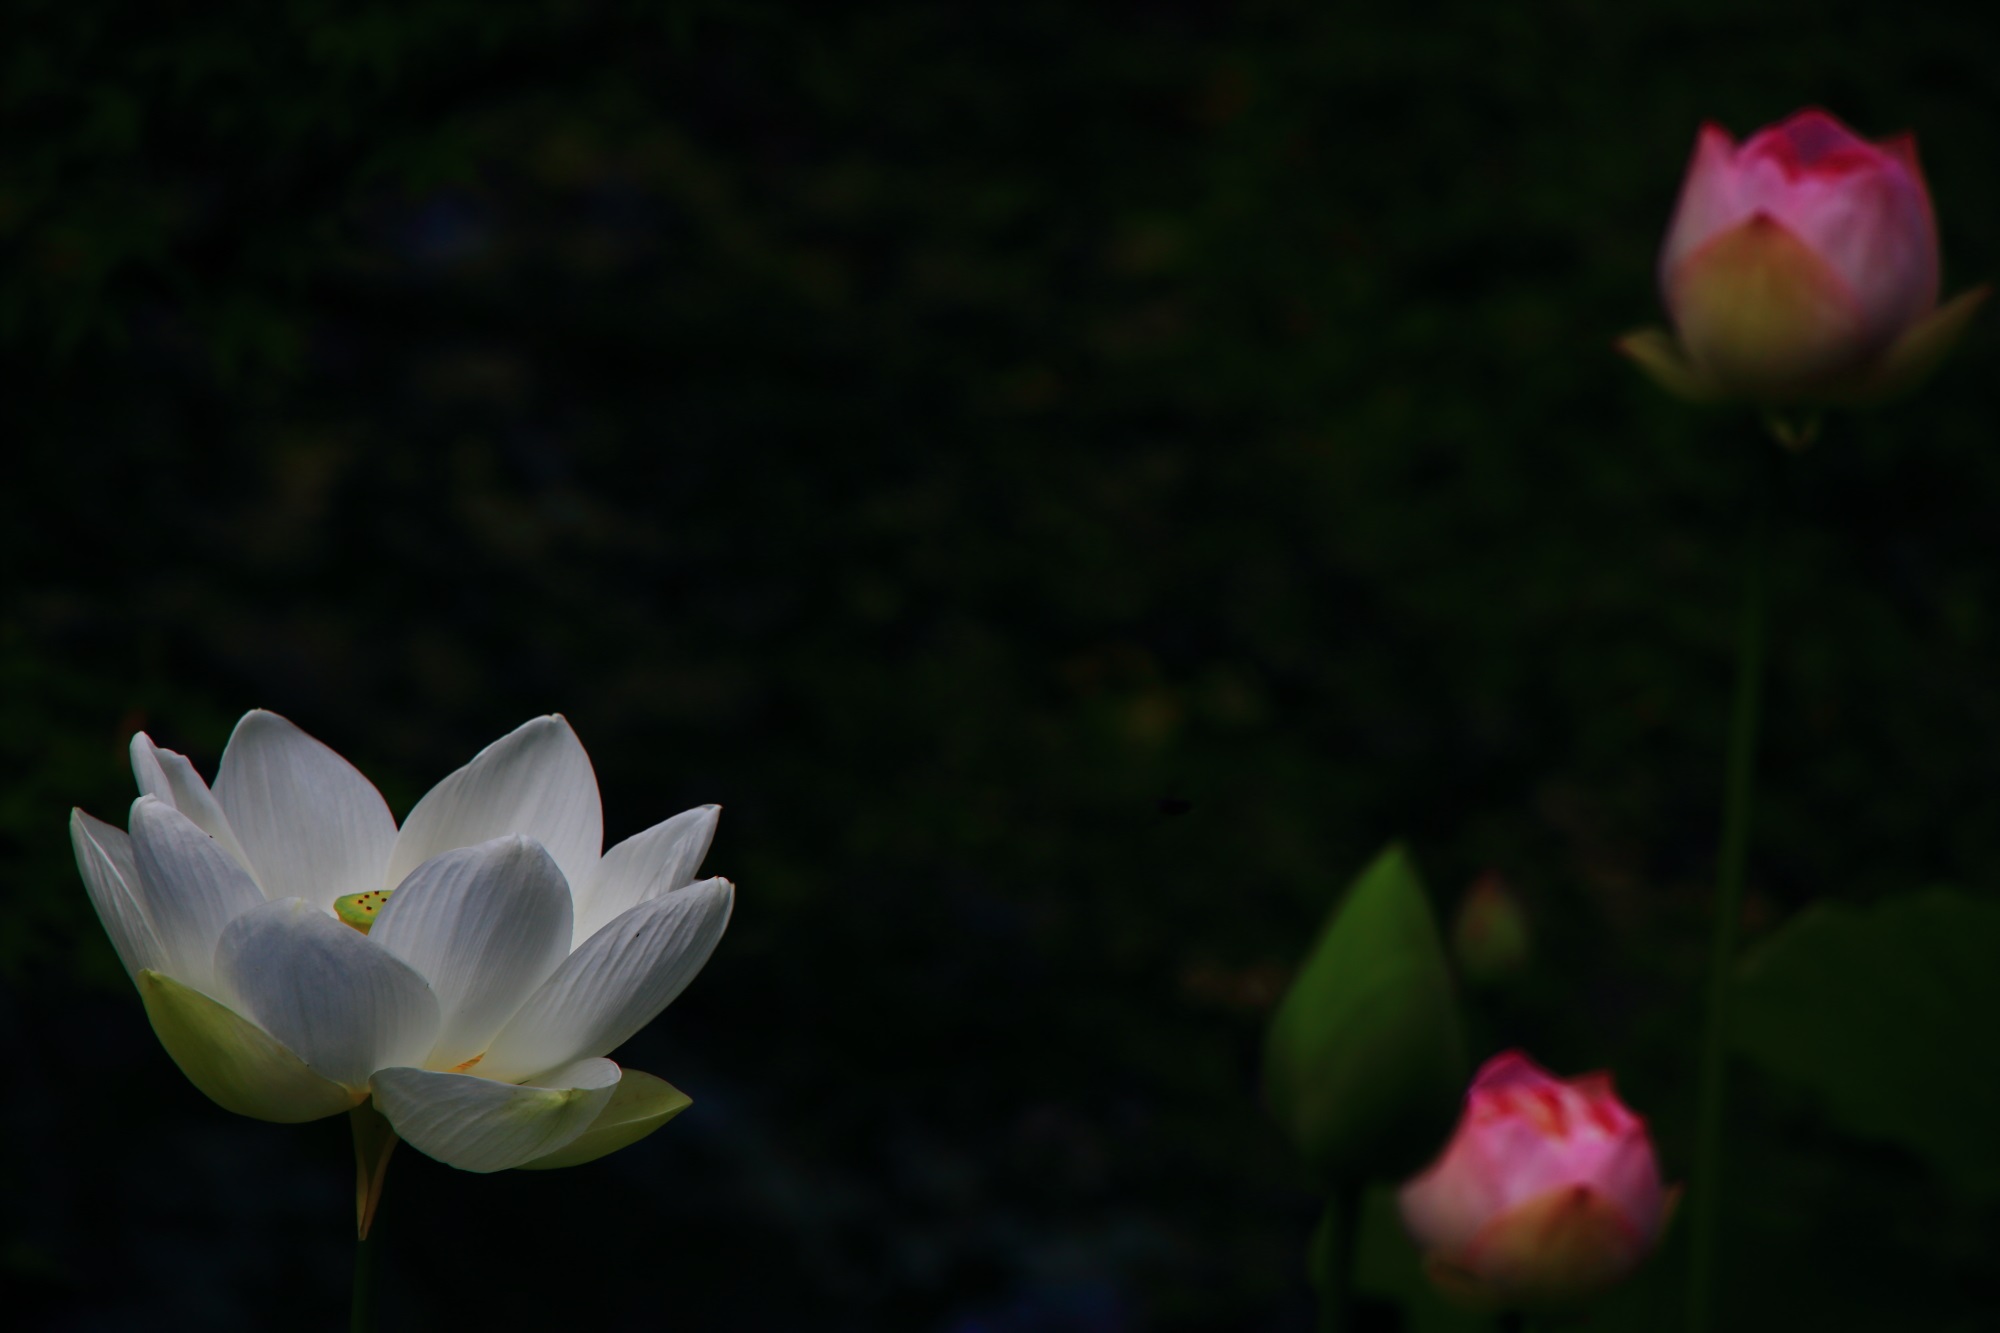 萬福寺の暗闇の中で光るような紅白の蓮の花